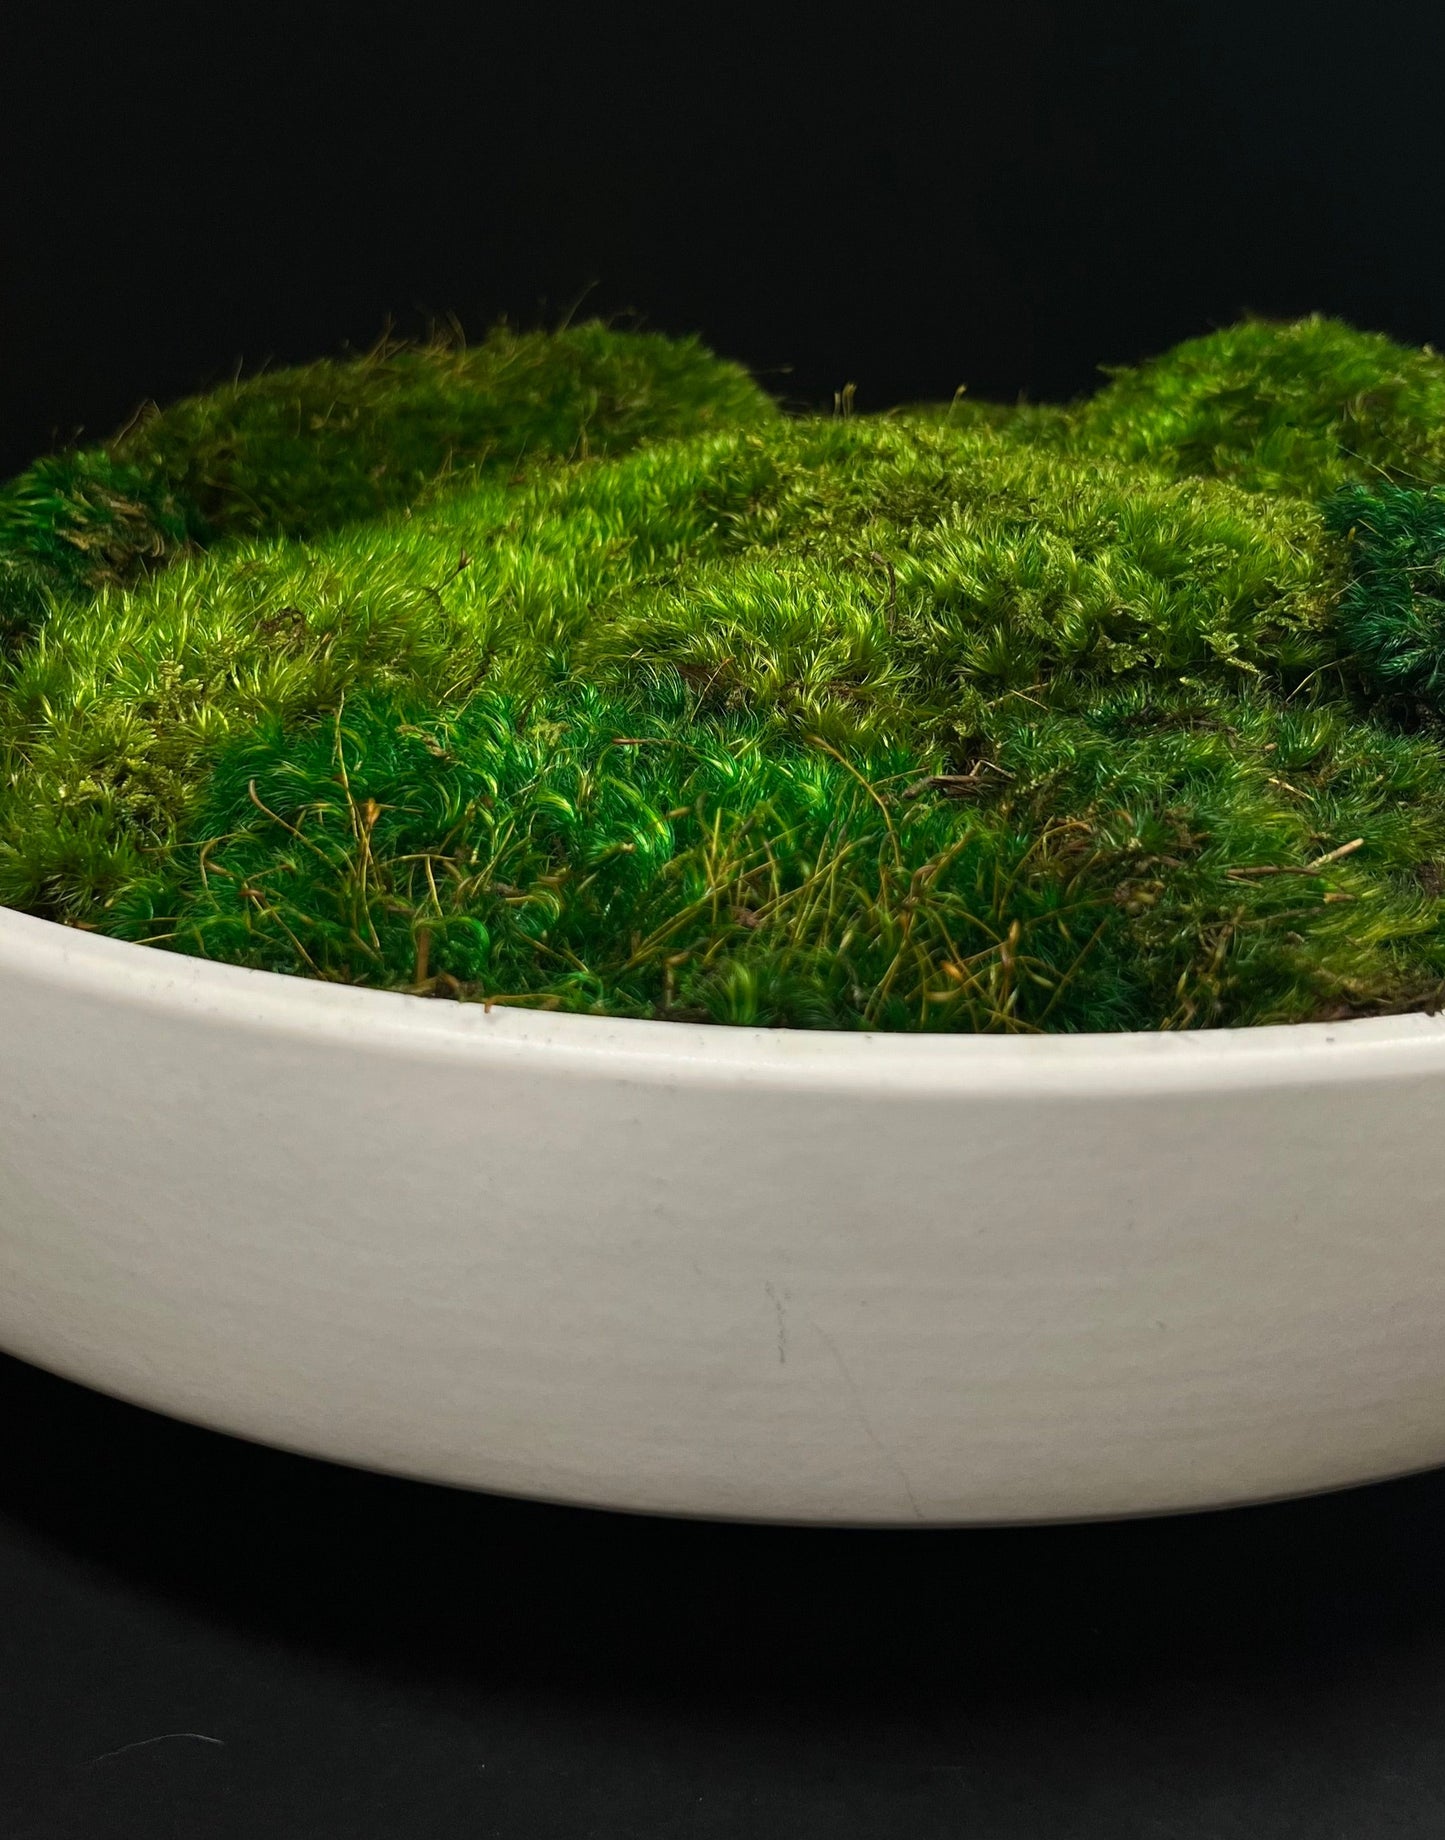 Moss Bowl Centerpiece